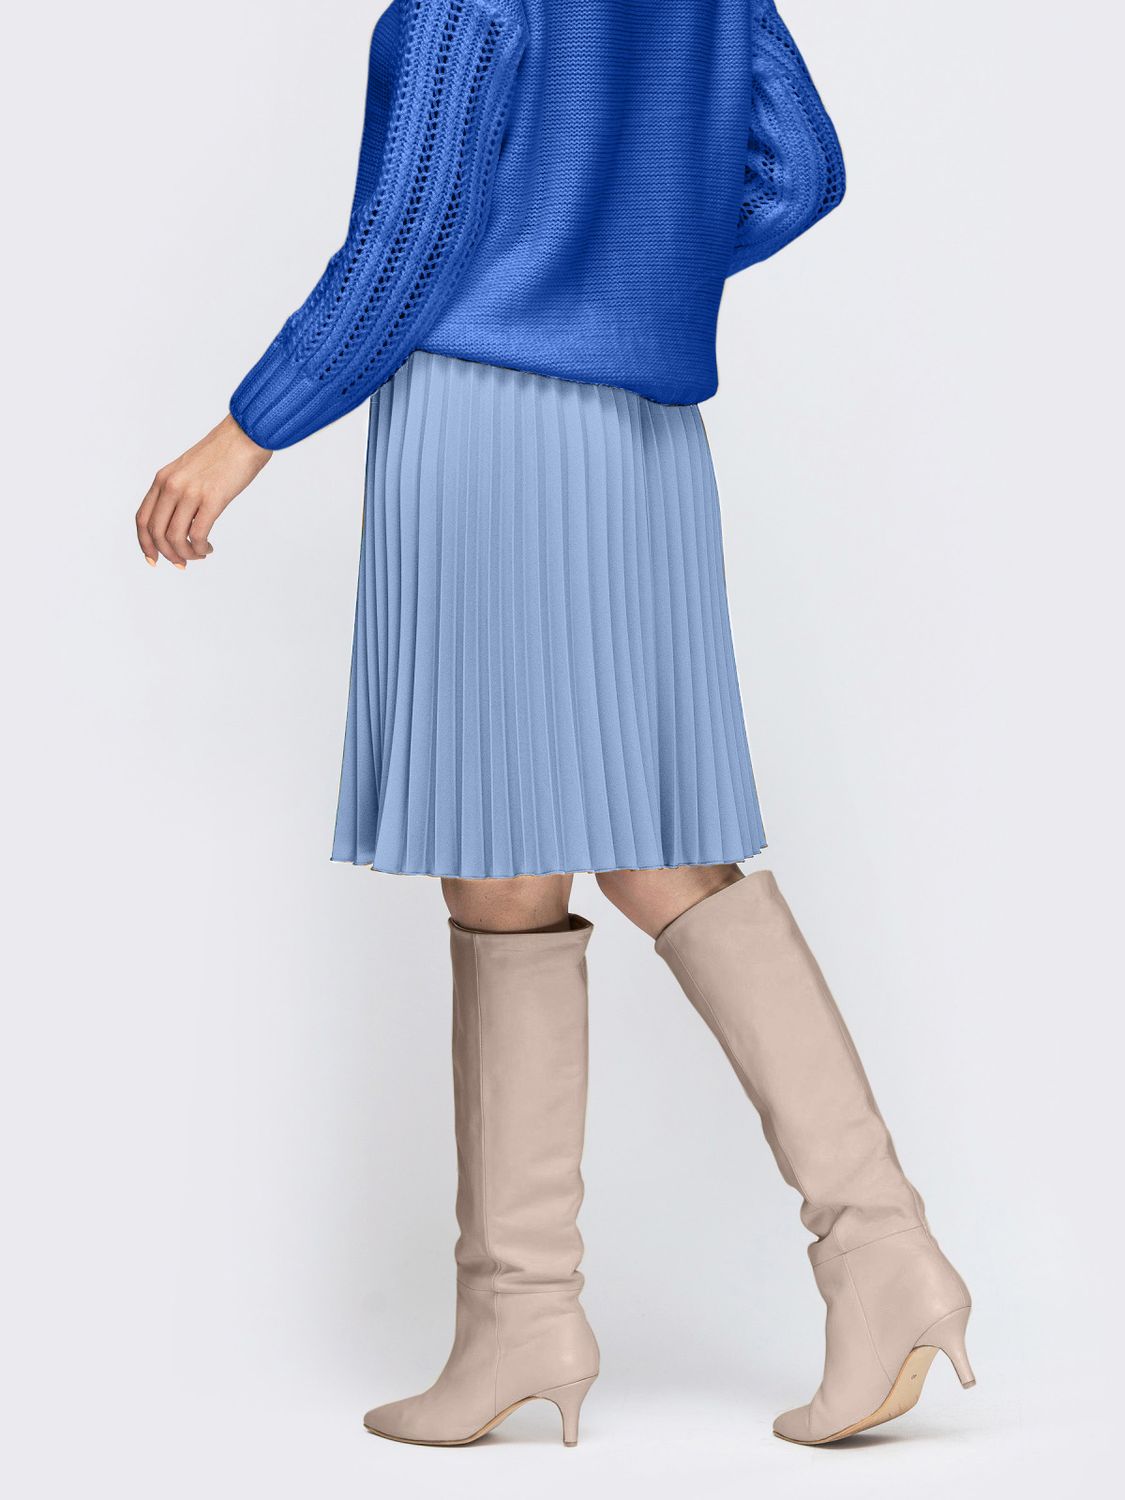 Плиссированная юбка до колена голубого цвета - фото